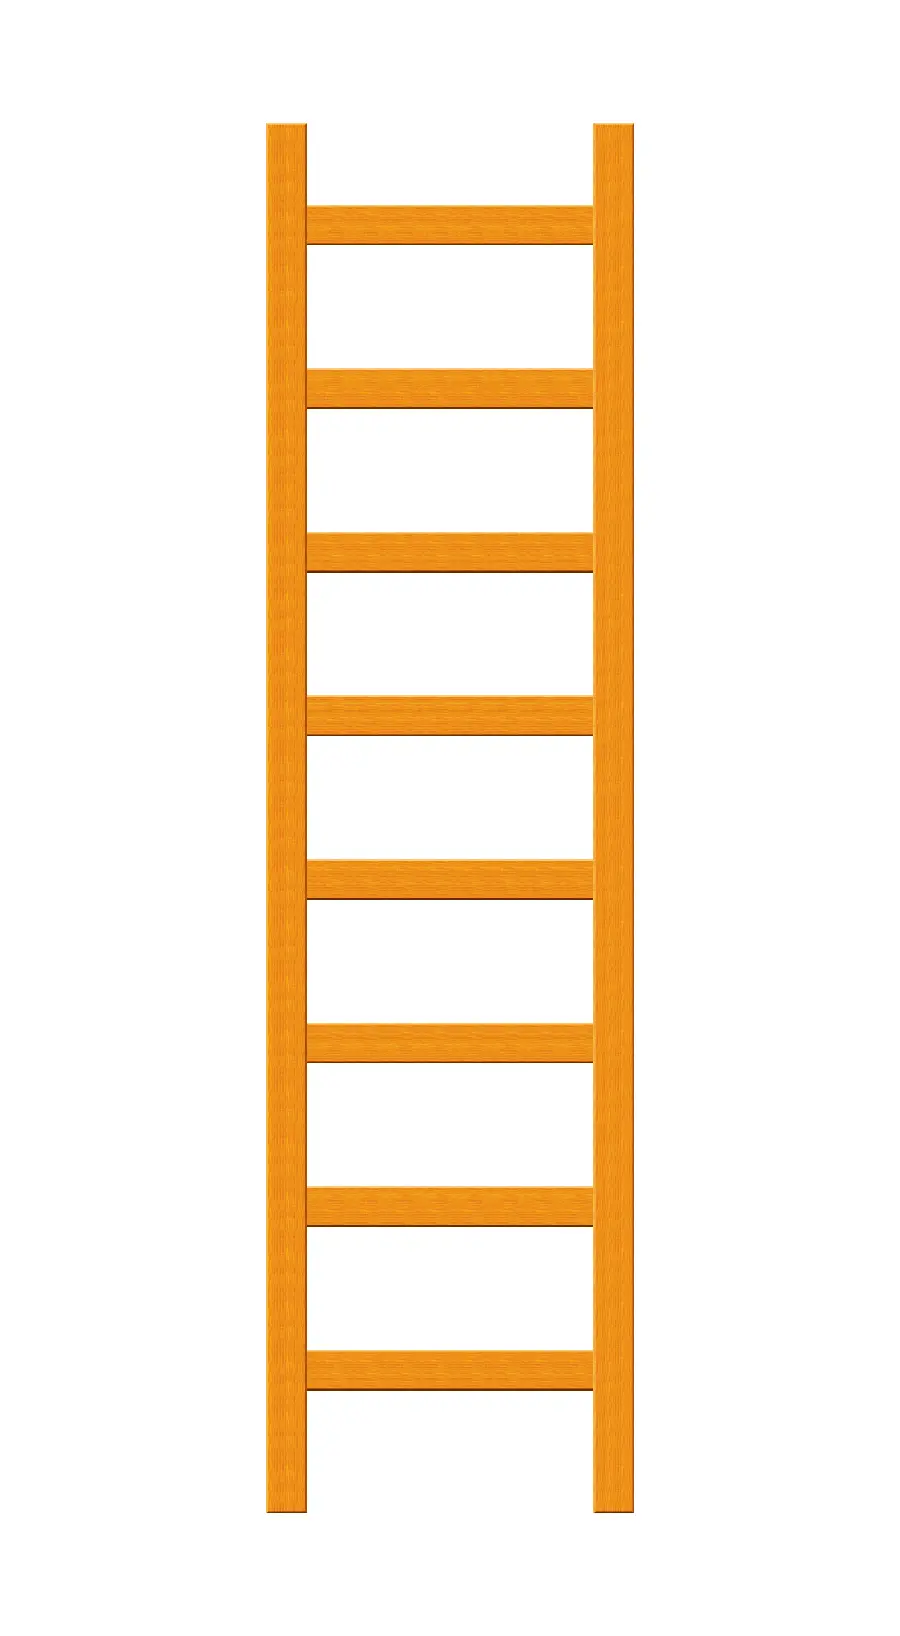 عکس وکتور جالب و دیدنی یک نردبان نارنجی رنگ